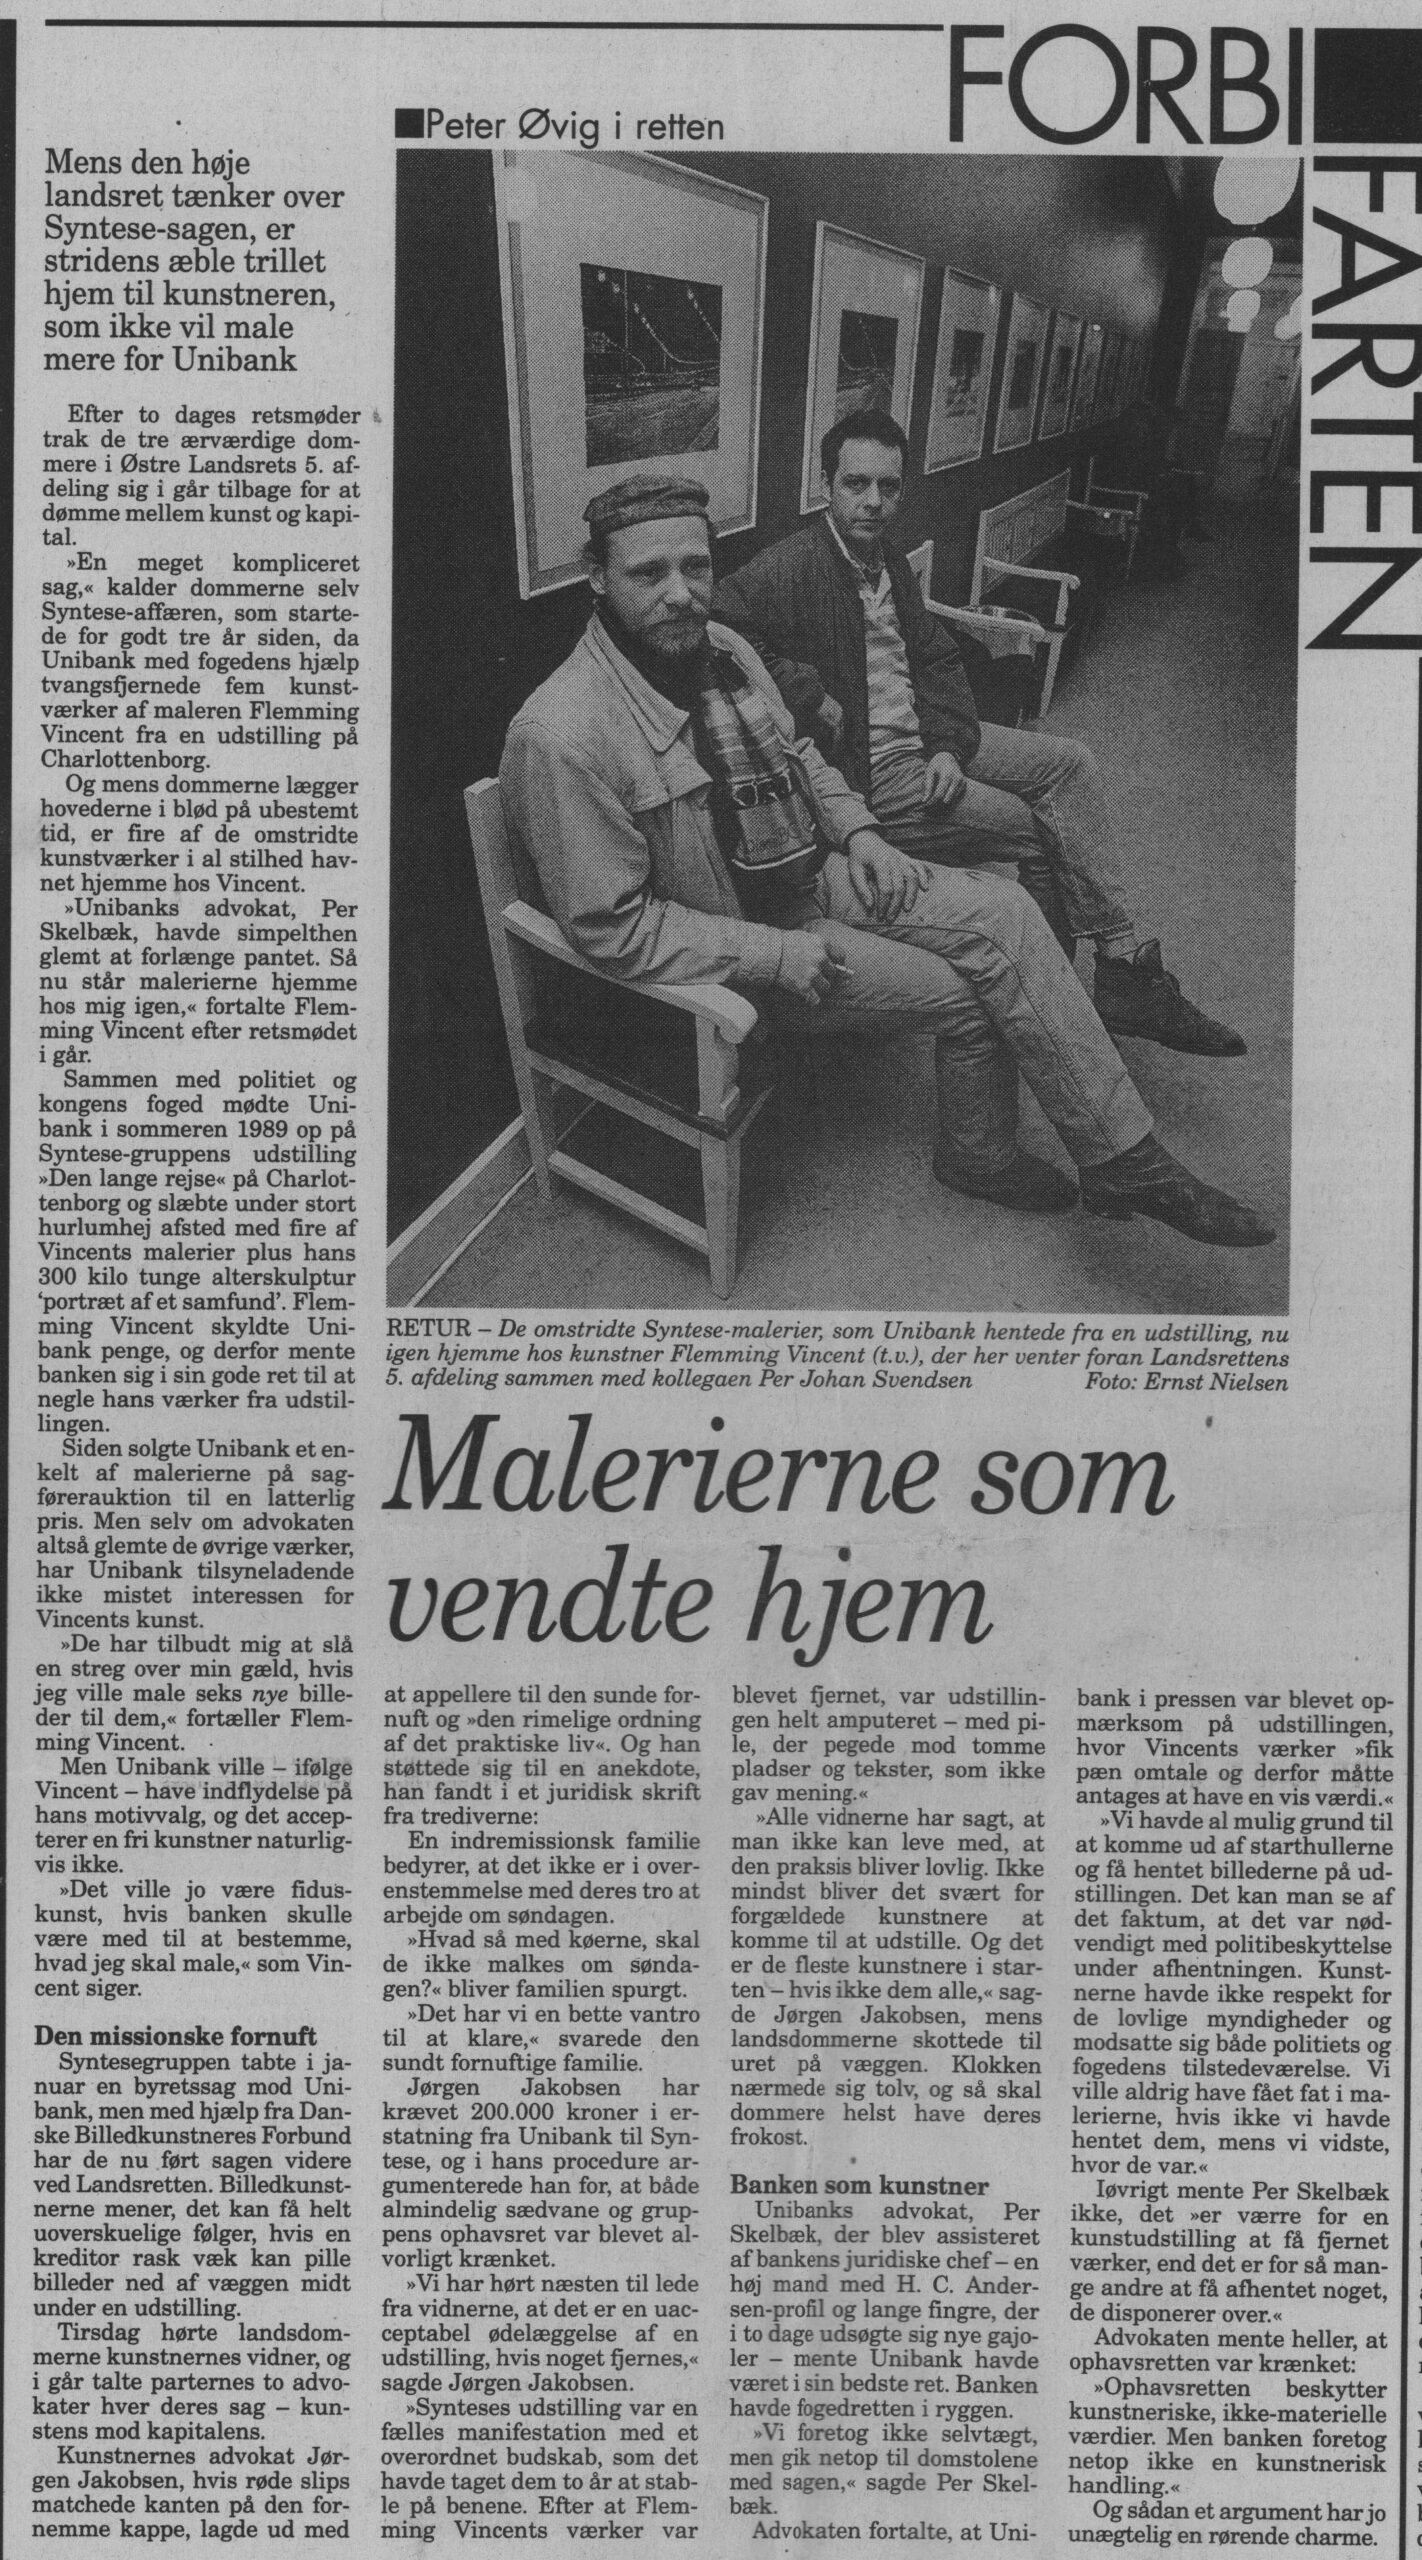 Malerierne som vendte hjem. Omtale (Retssag. Den lange rejse, Charlottenborg, København 1989). Peter Øvig. Information.